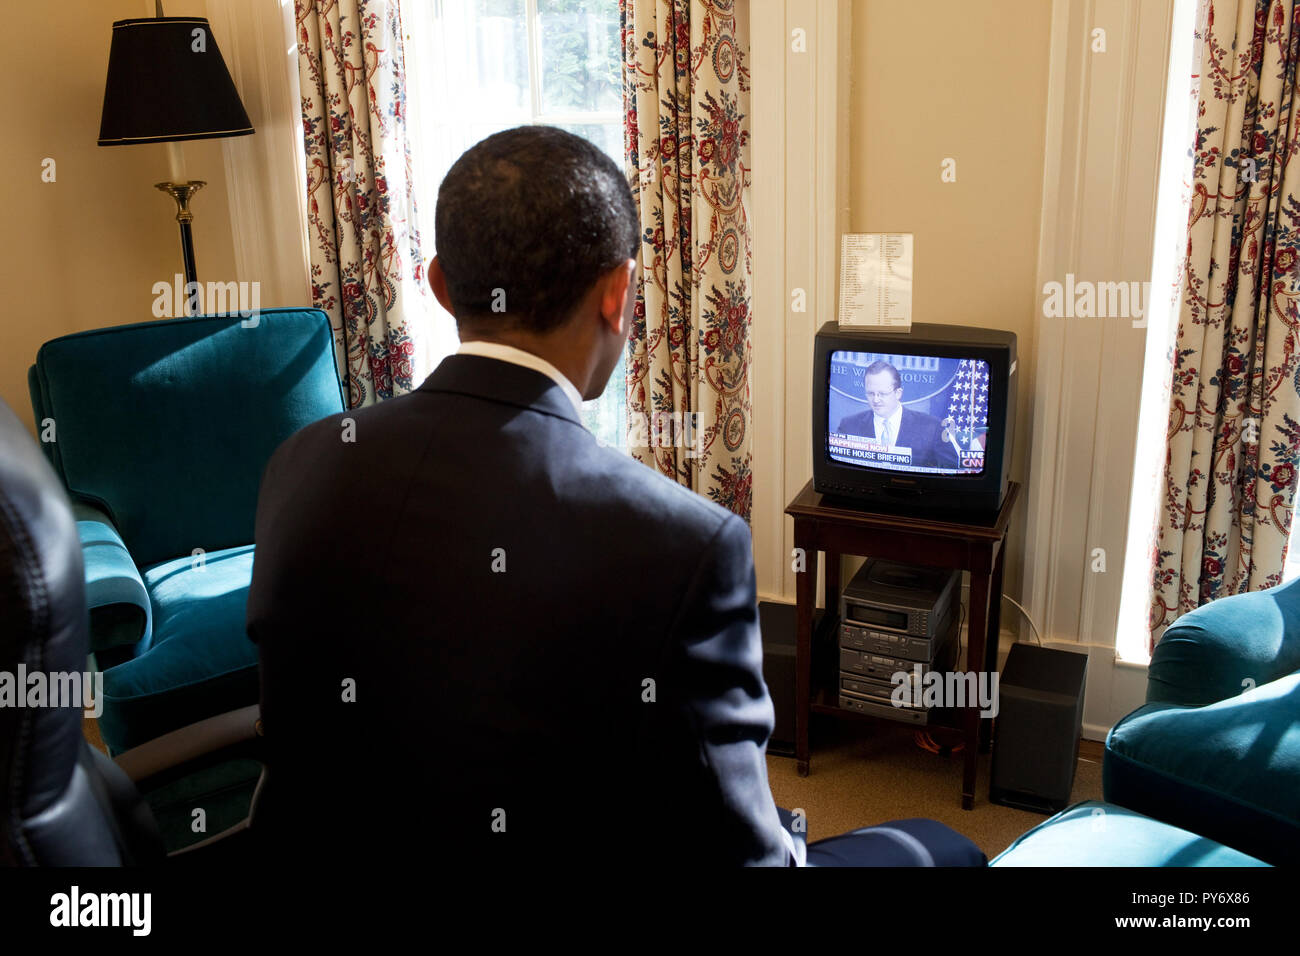 Le président Obama watches Secrétaire de presse Robert Gibbs' première réunion d'information à la télévision, dans son étude sur le Bureau Ovale 1/22/09. Photo officielle de la Maison Blanche par Joyce N. Boghosian Banque D'Images